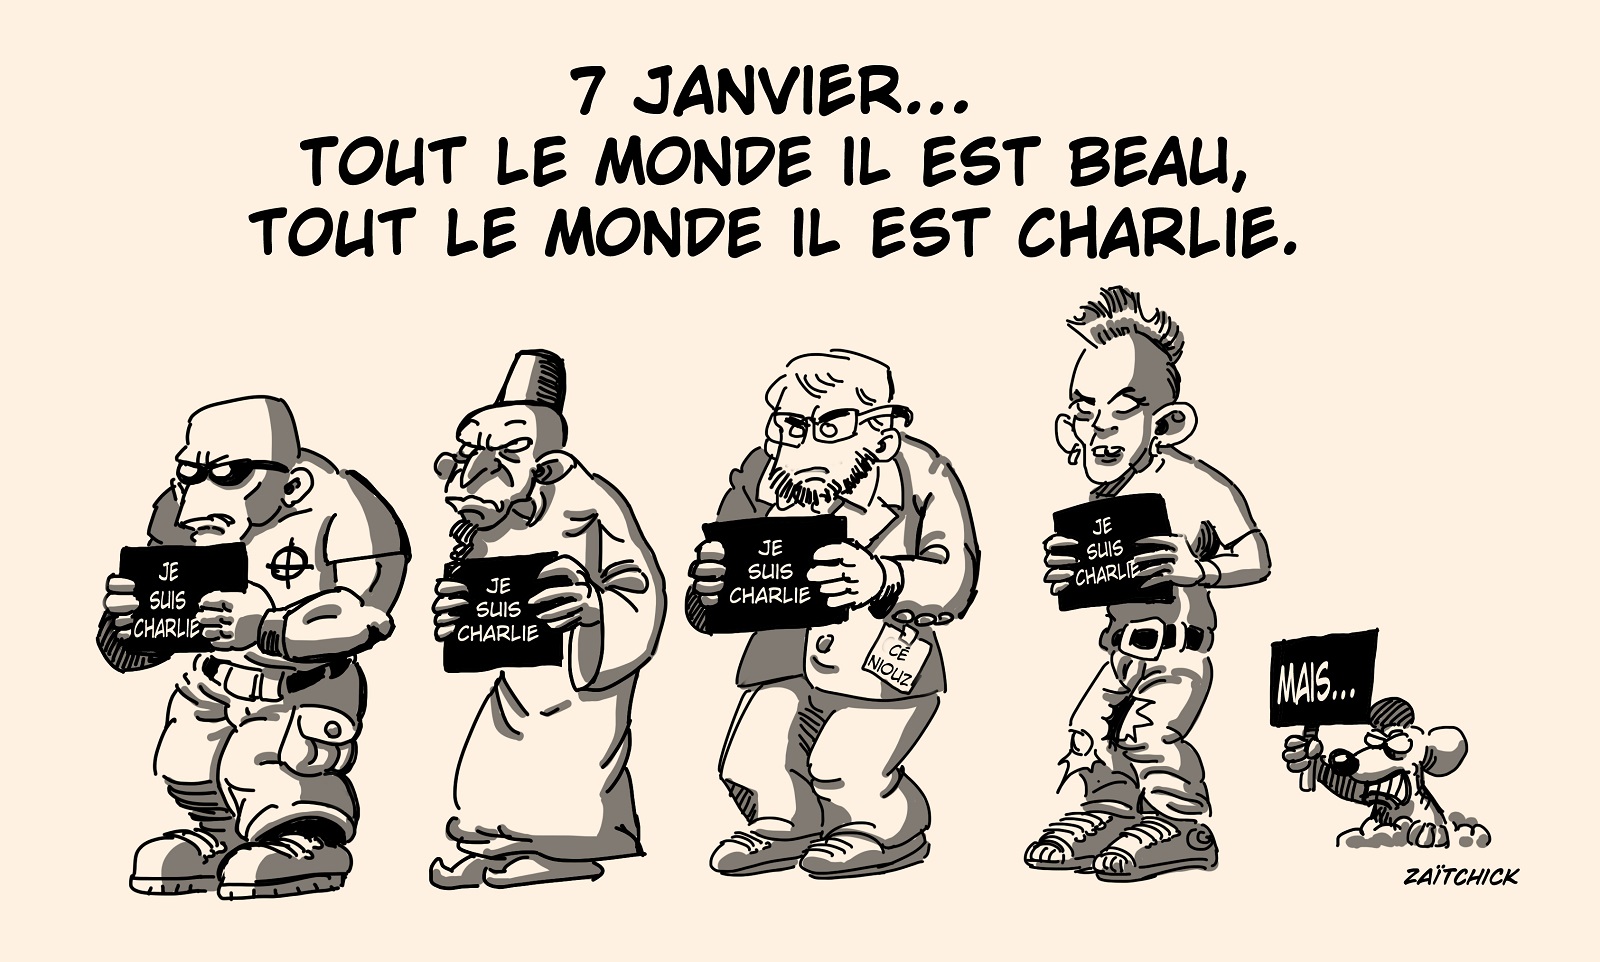 Rigolages on X: #humour #rigolages #dessin #confinement #reconfinement  #actualites #pq #papiertoilette #stock  / X